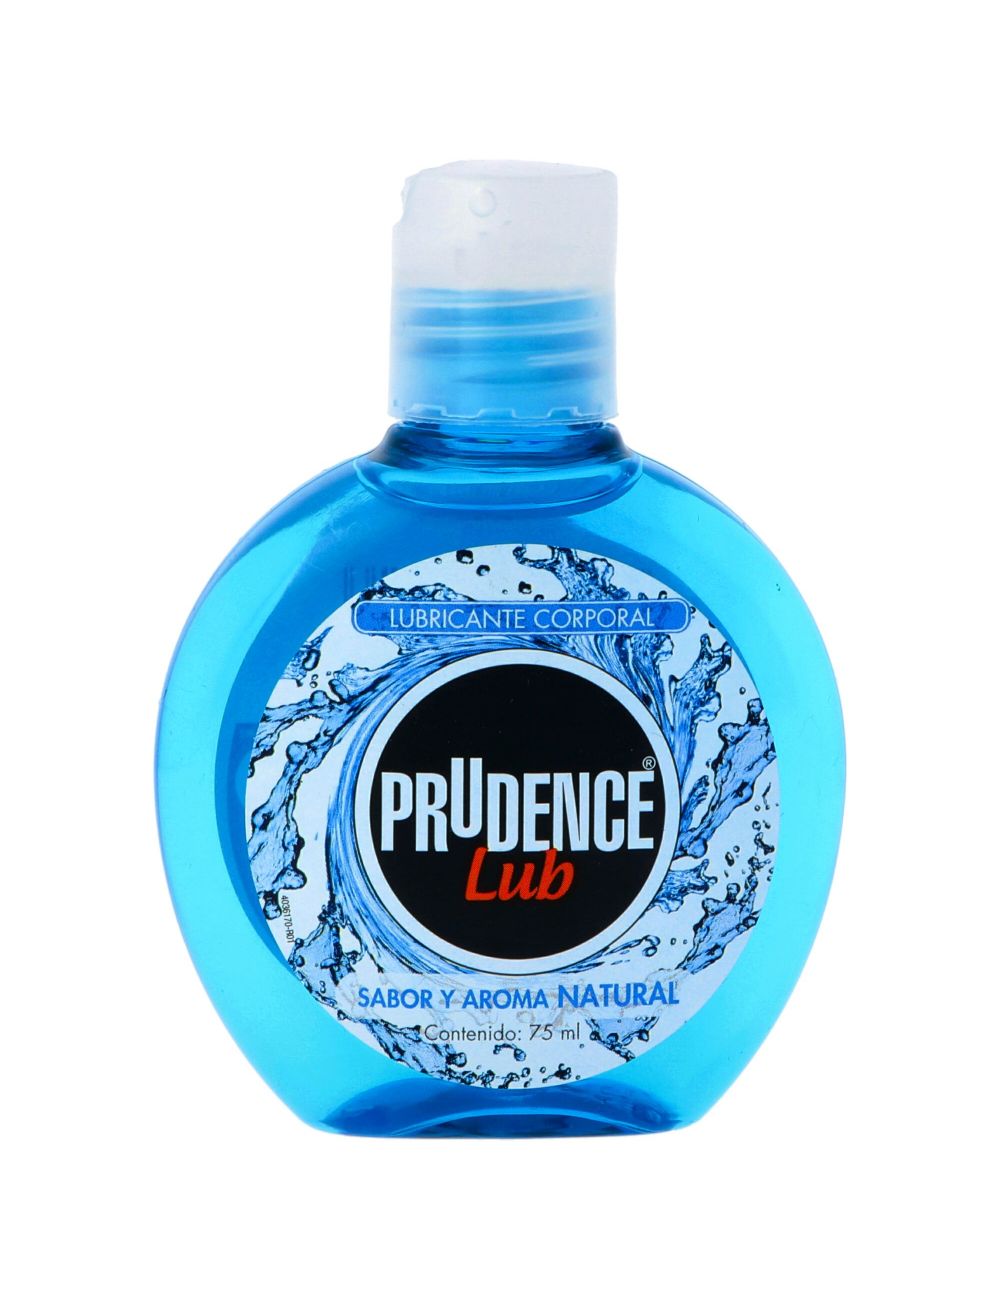 Prudence Lub Natural Lubricante Base Agua Env. C/75 Ml. Desionizada Y Desmineralizada- Acido